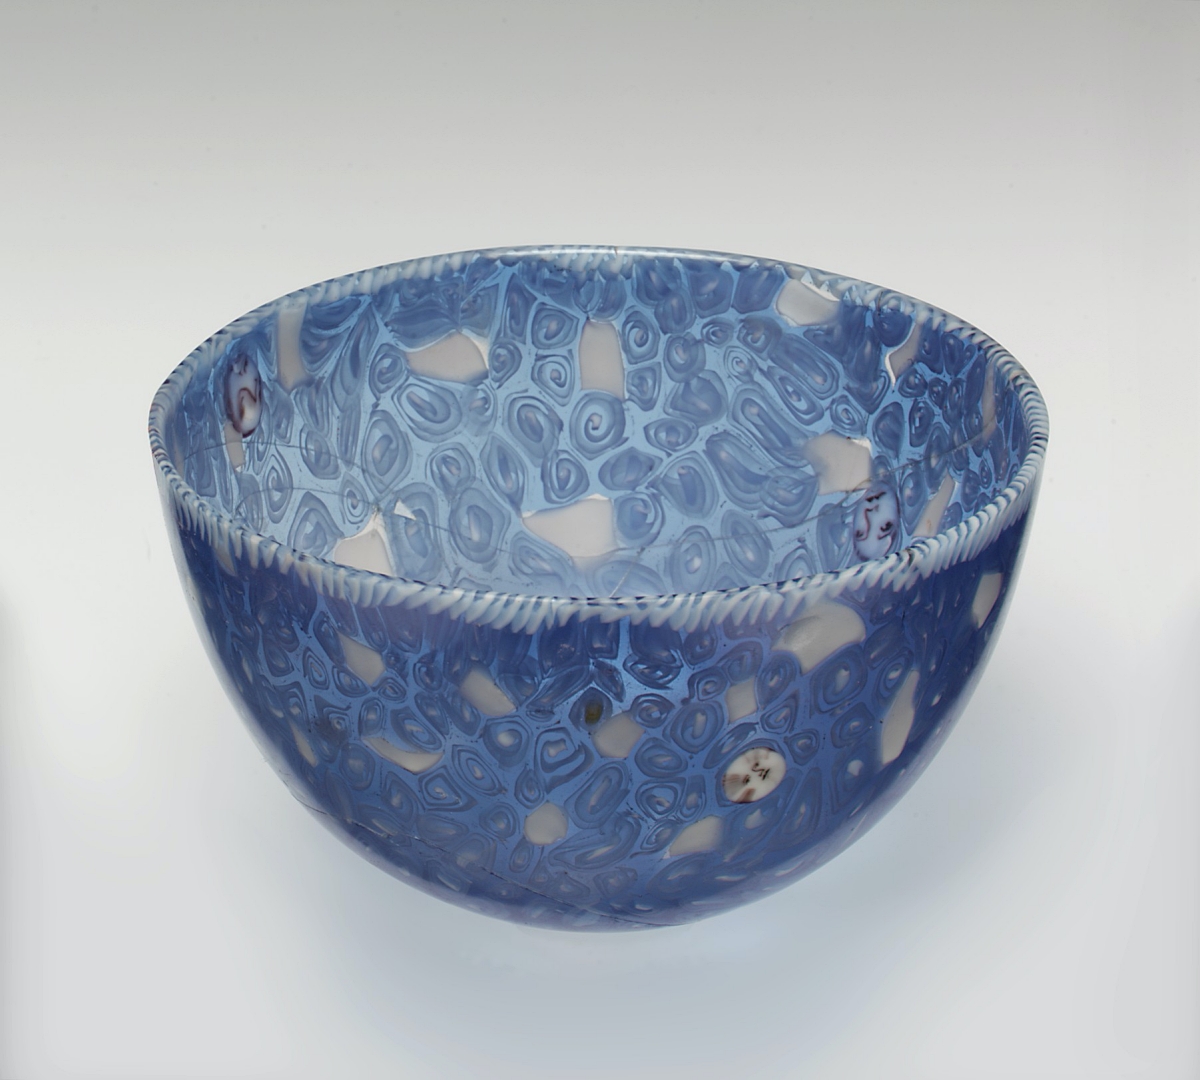 19th century  millefiori bowl from Murano